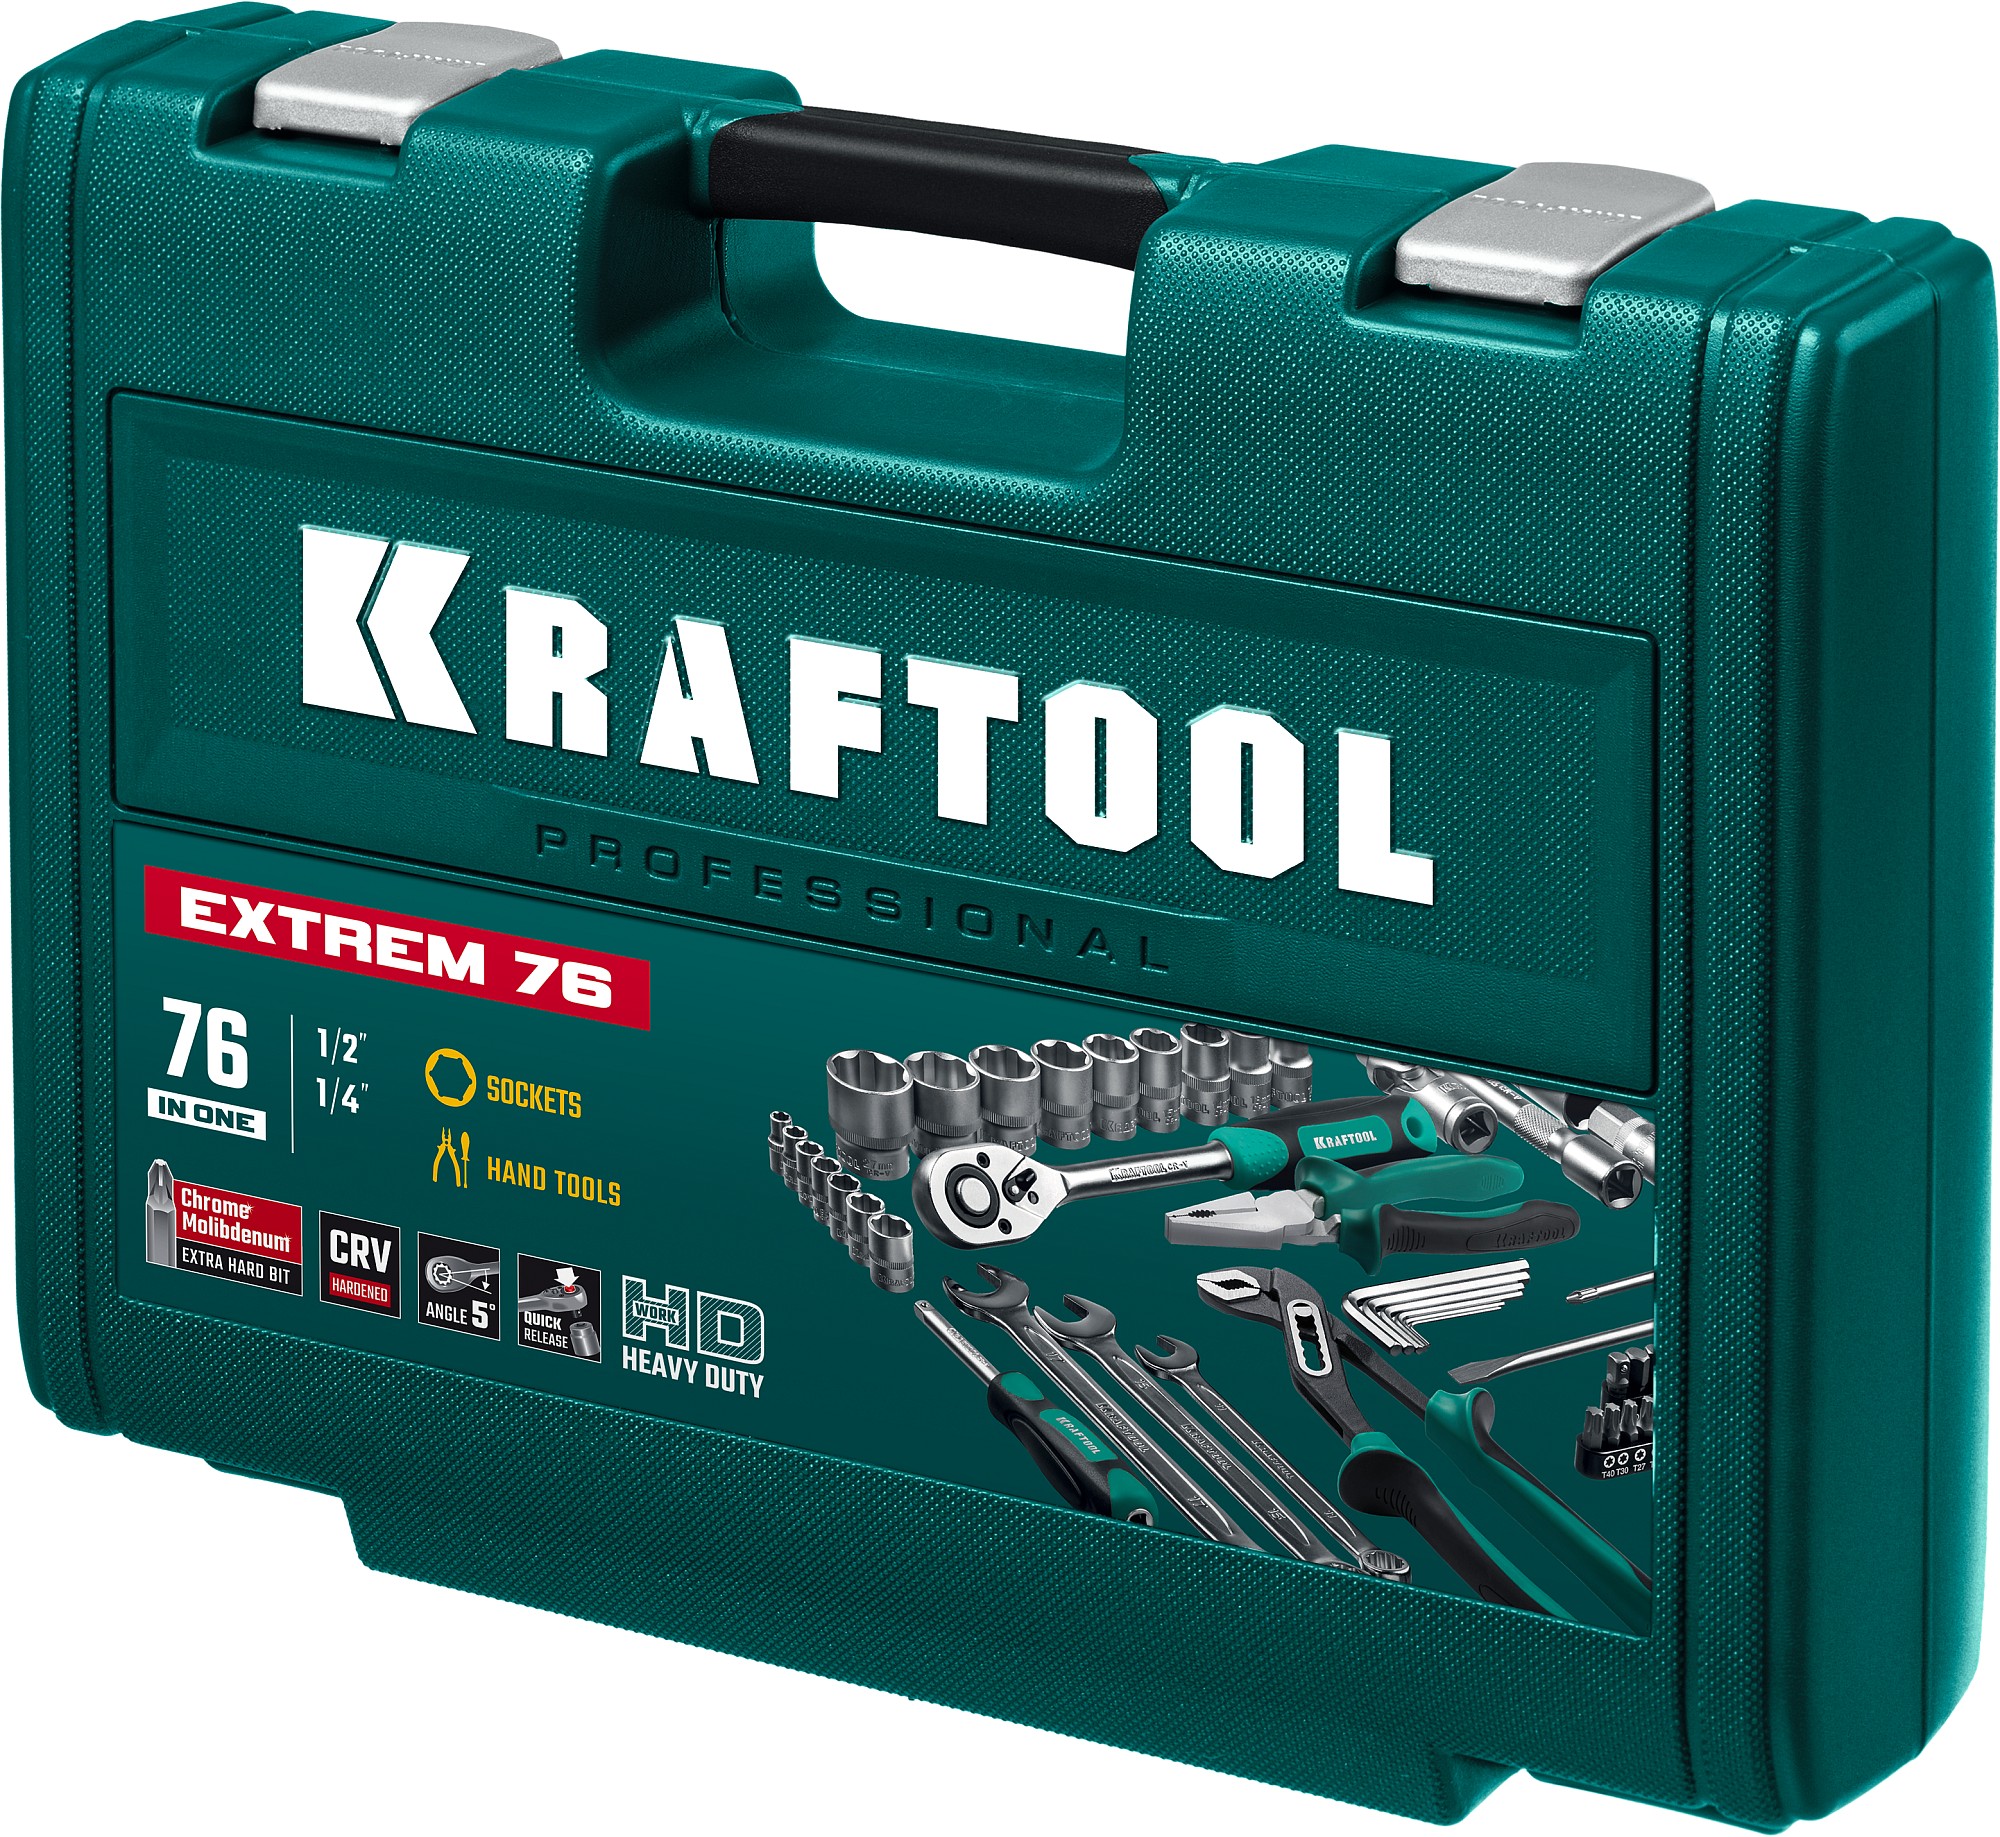 KRAFTOOL EXTREM-76, 76 предм., (1/2″+3/8″+1/4″), универсальный набор инструмента (27889-H76)